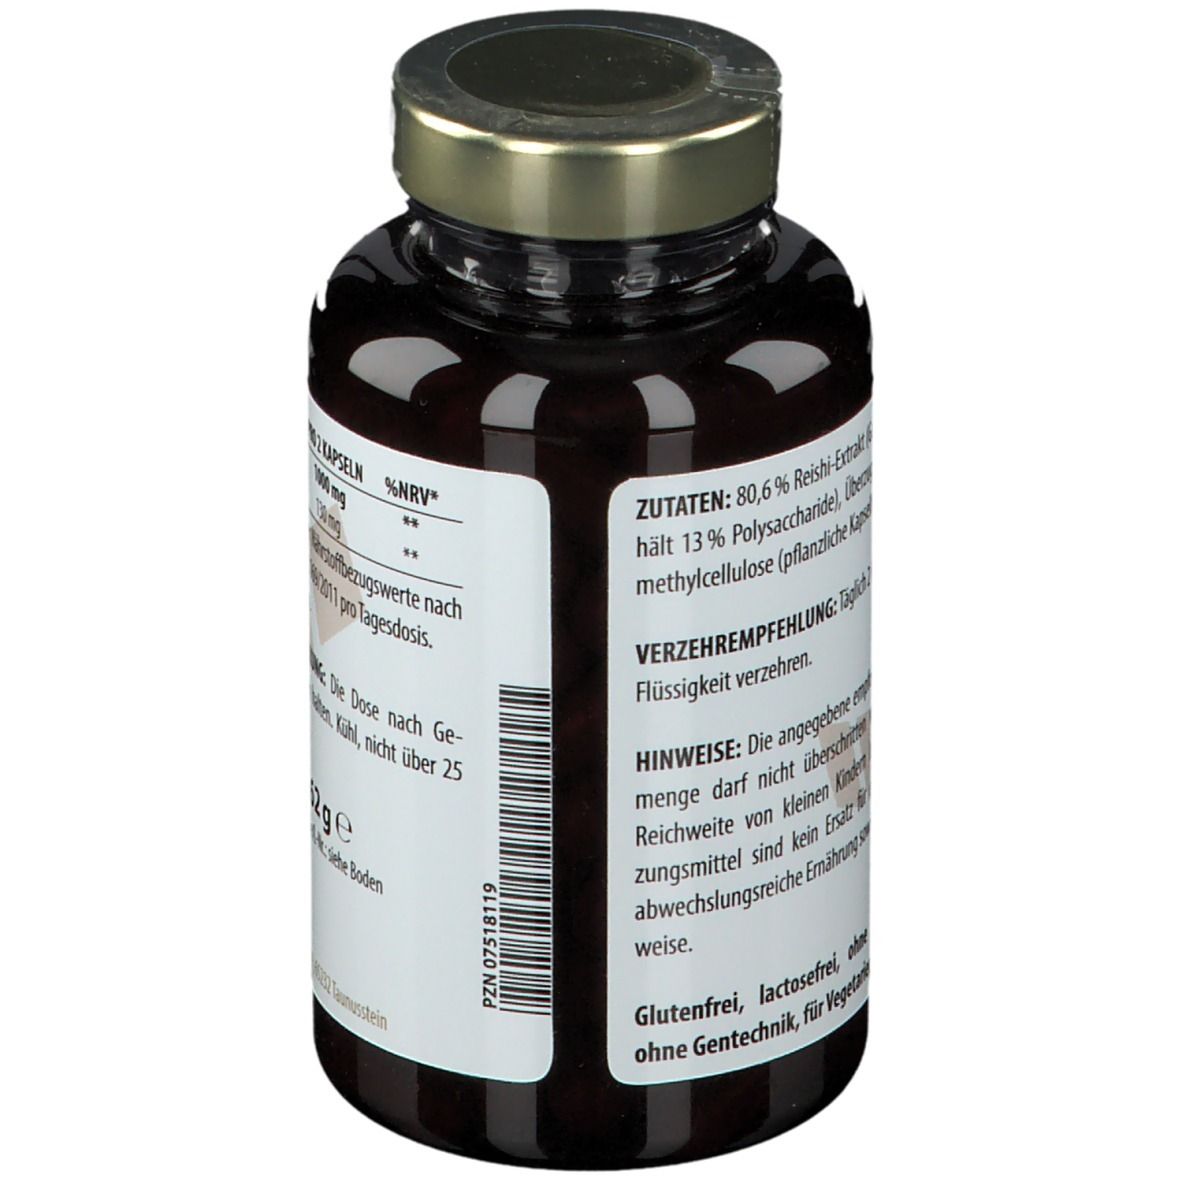 Reishi extract 500 mg